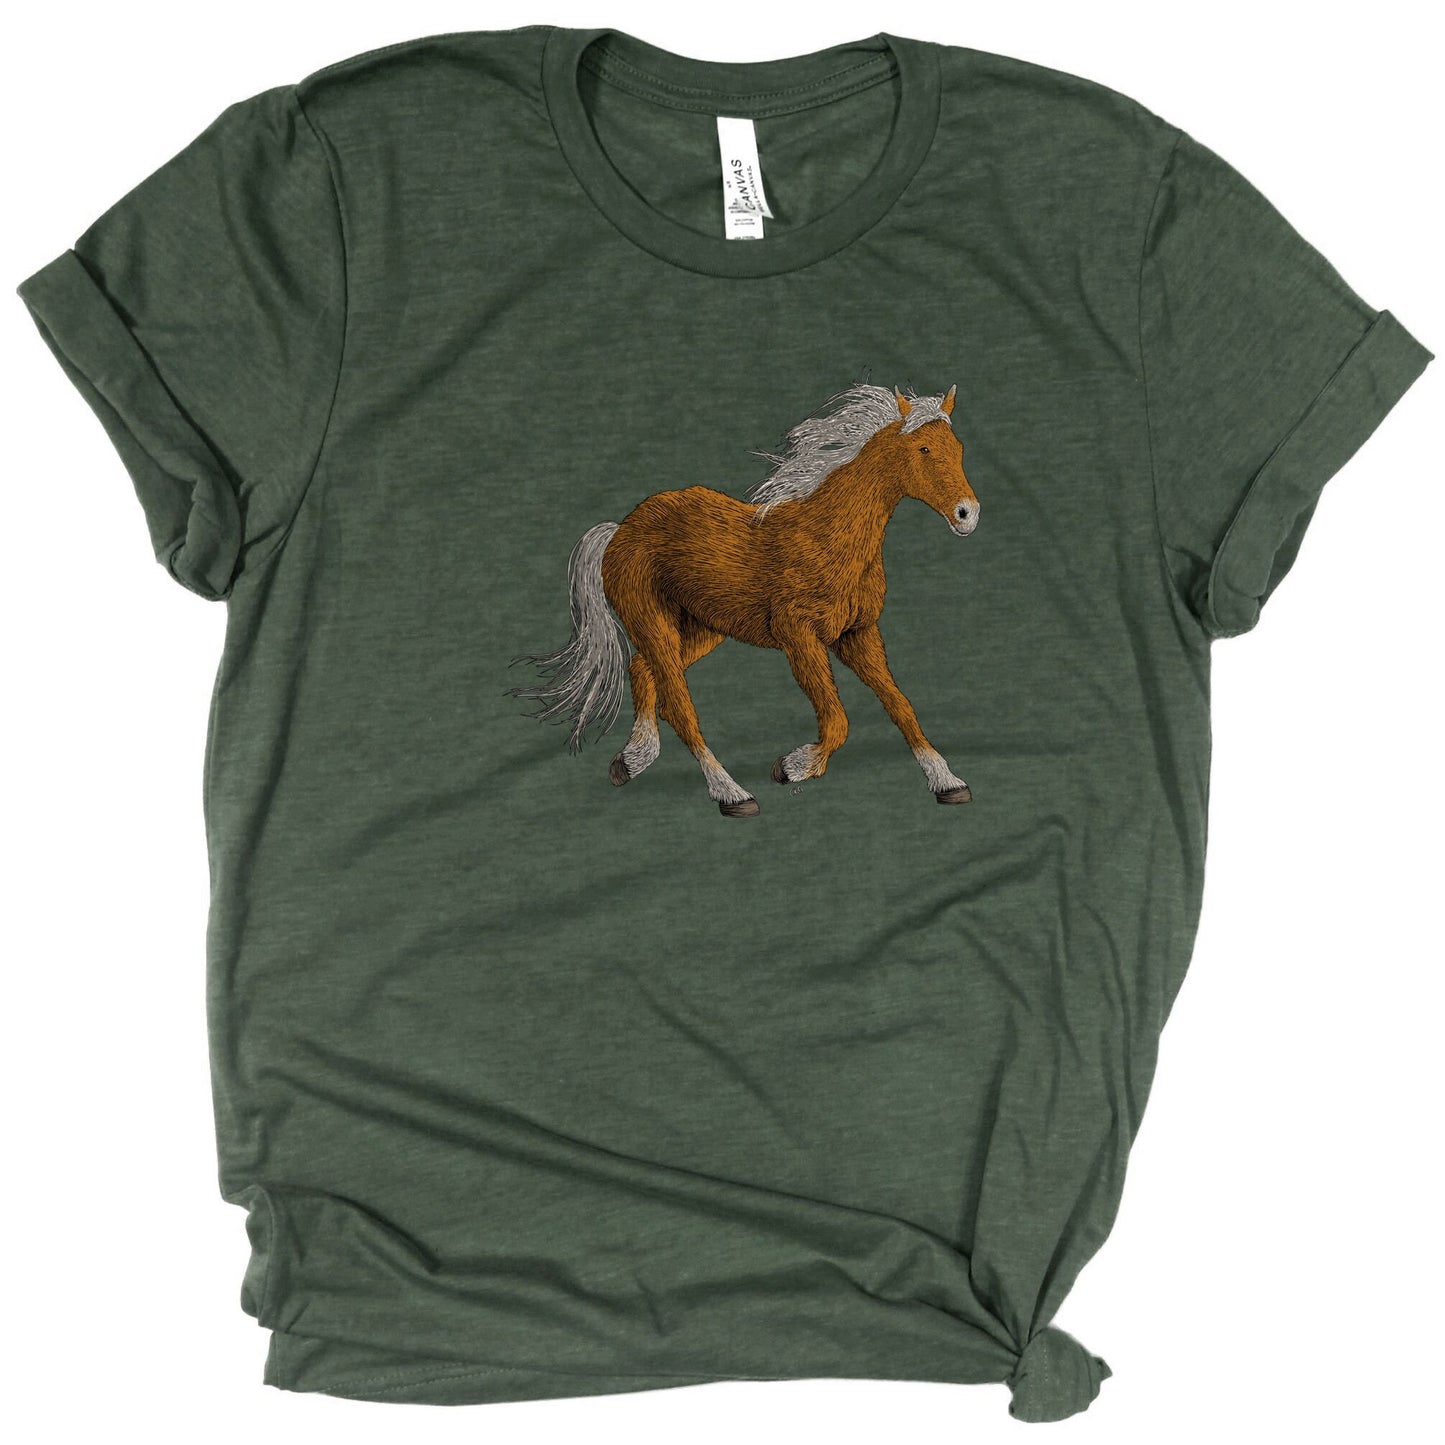 Horse Running Shirt